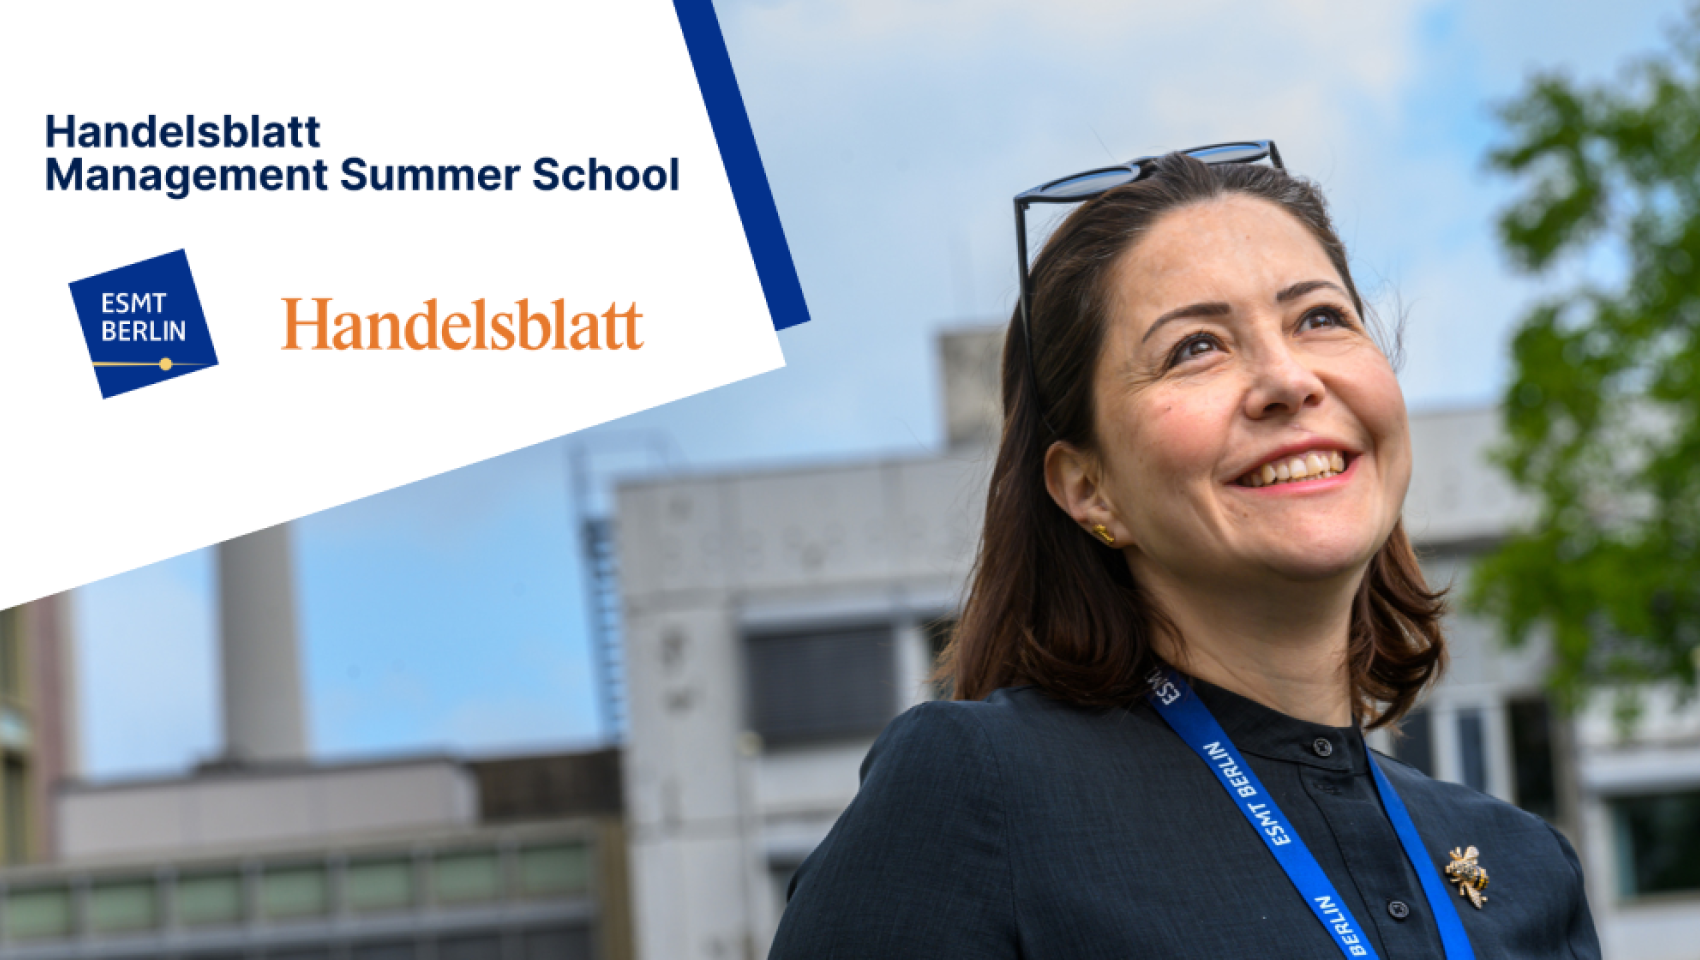 Handelsblatt Management Summer School